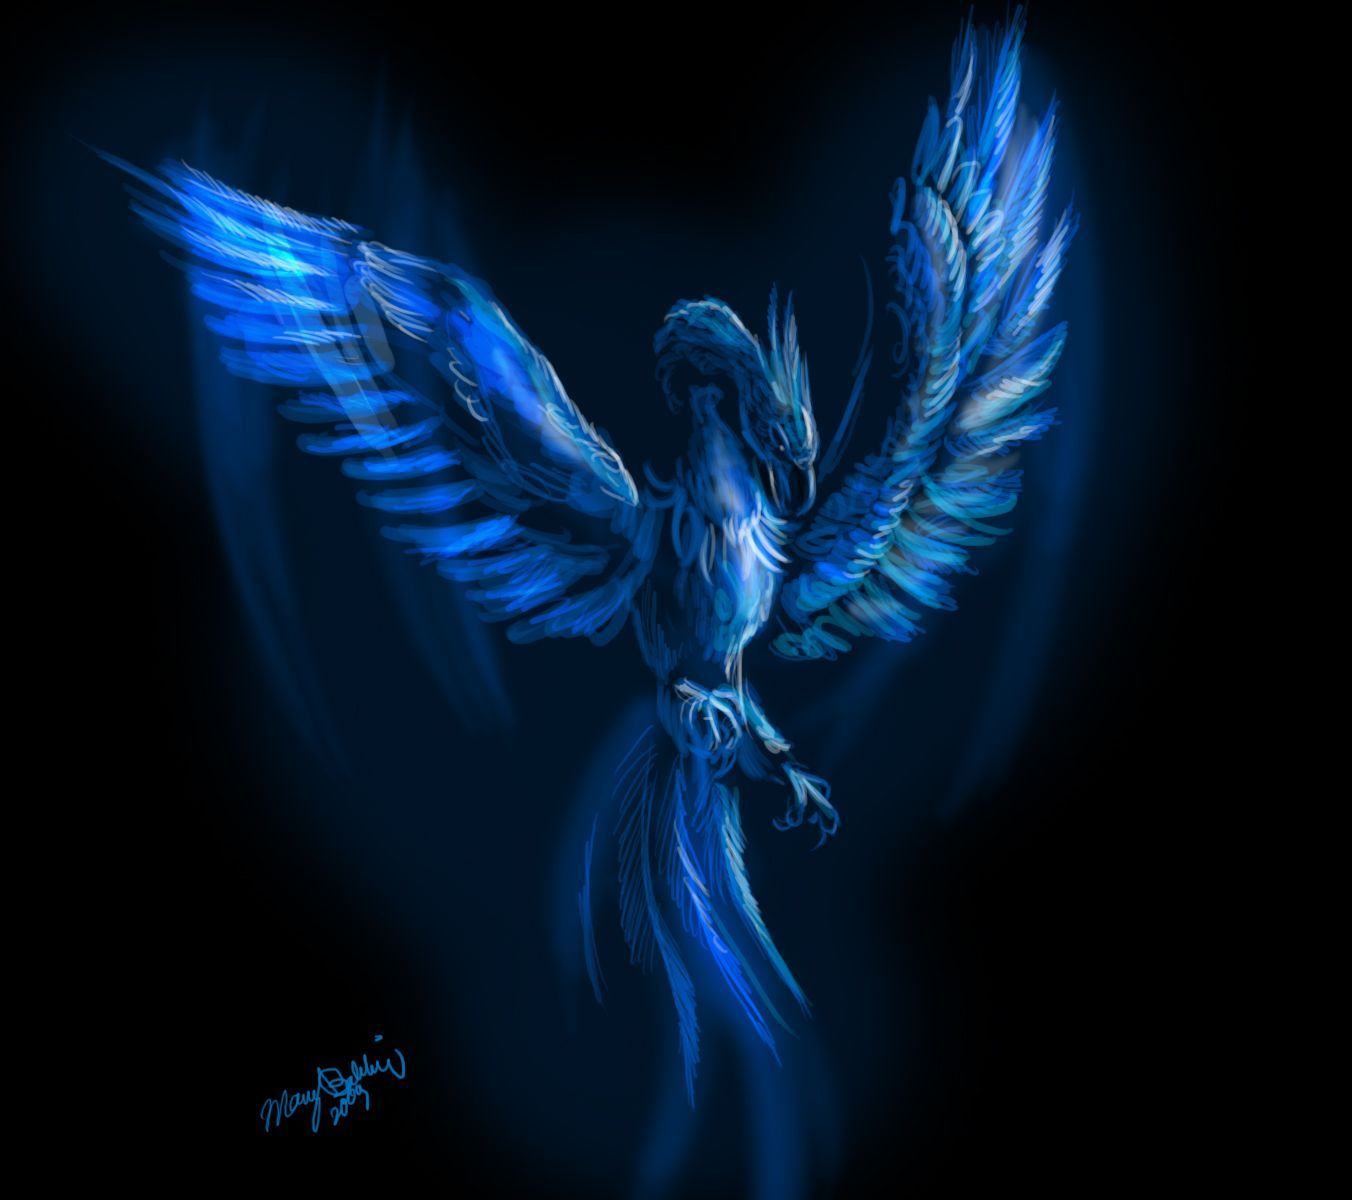 Blue Phoenix. Phoenix wallpaper, Phoenix bird, Phoenix tattoo